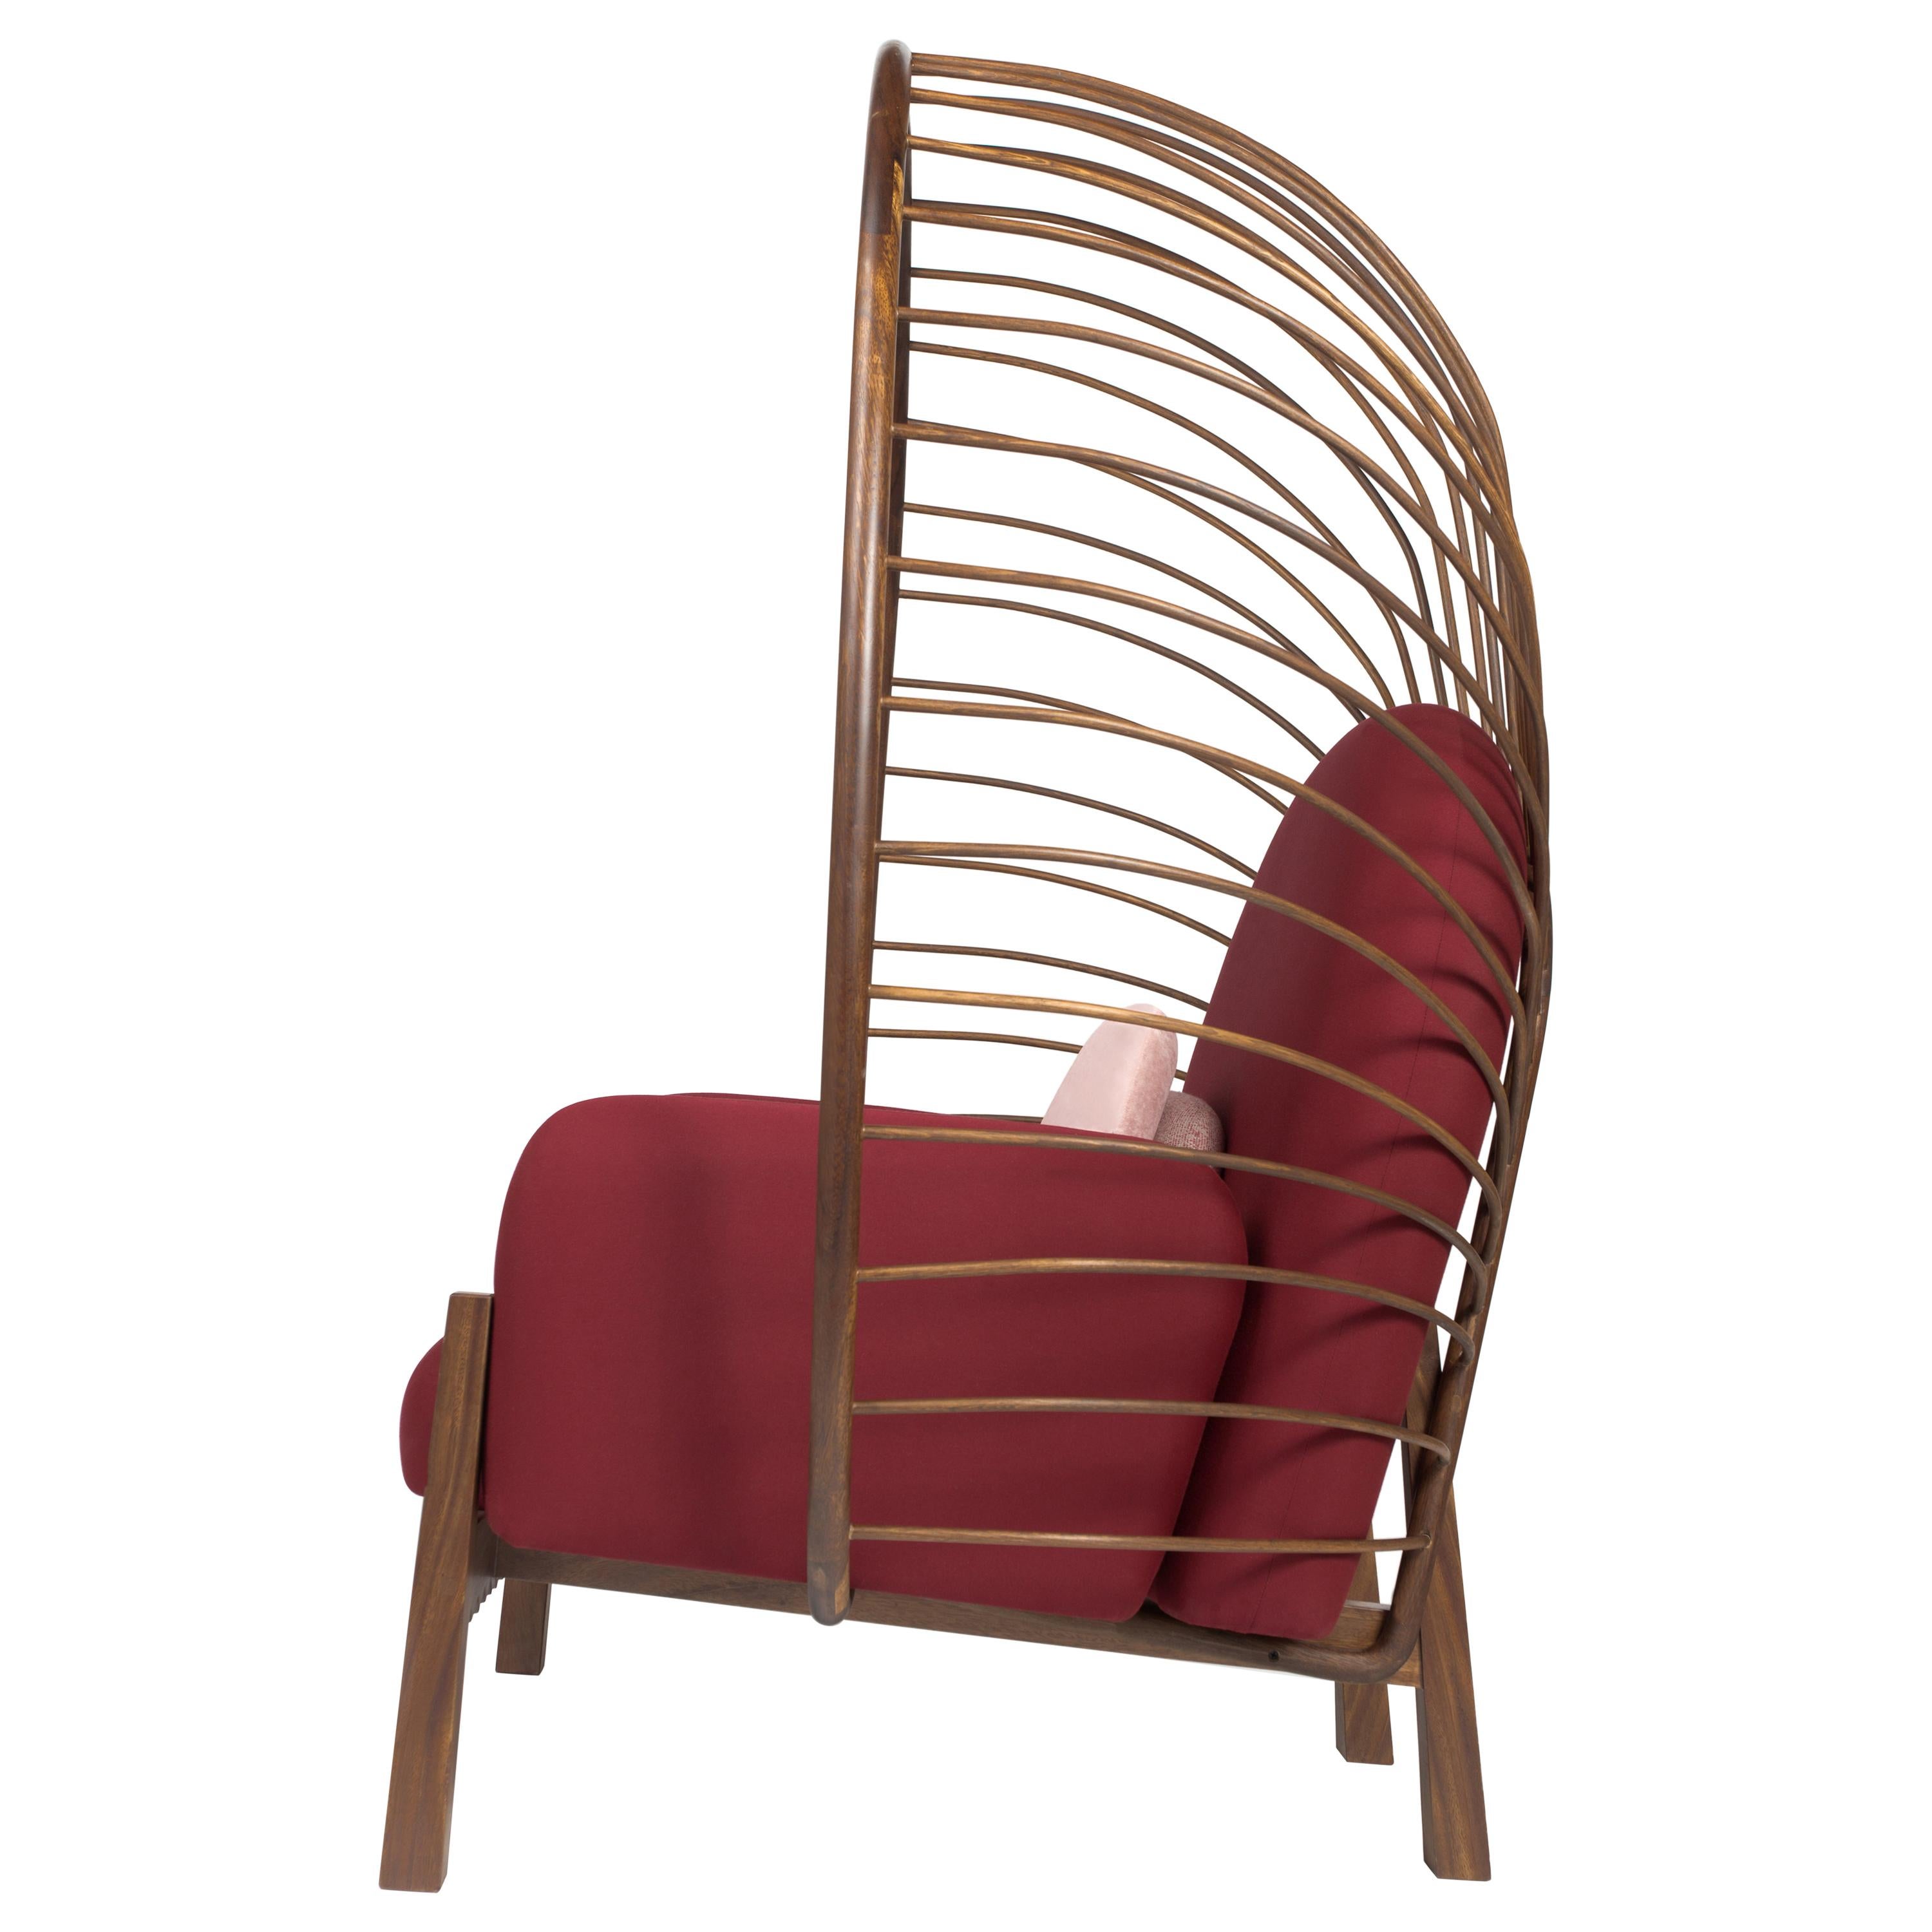 Ce fauteuil élégant et saisissant a été conçu pour mettre en valeur les espaces extérieurs par son ampleur et sa forme organique. Parfait pour un espace extérieur de détente.  On peut presque se sentir protégé par son support en forme de couronne.